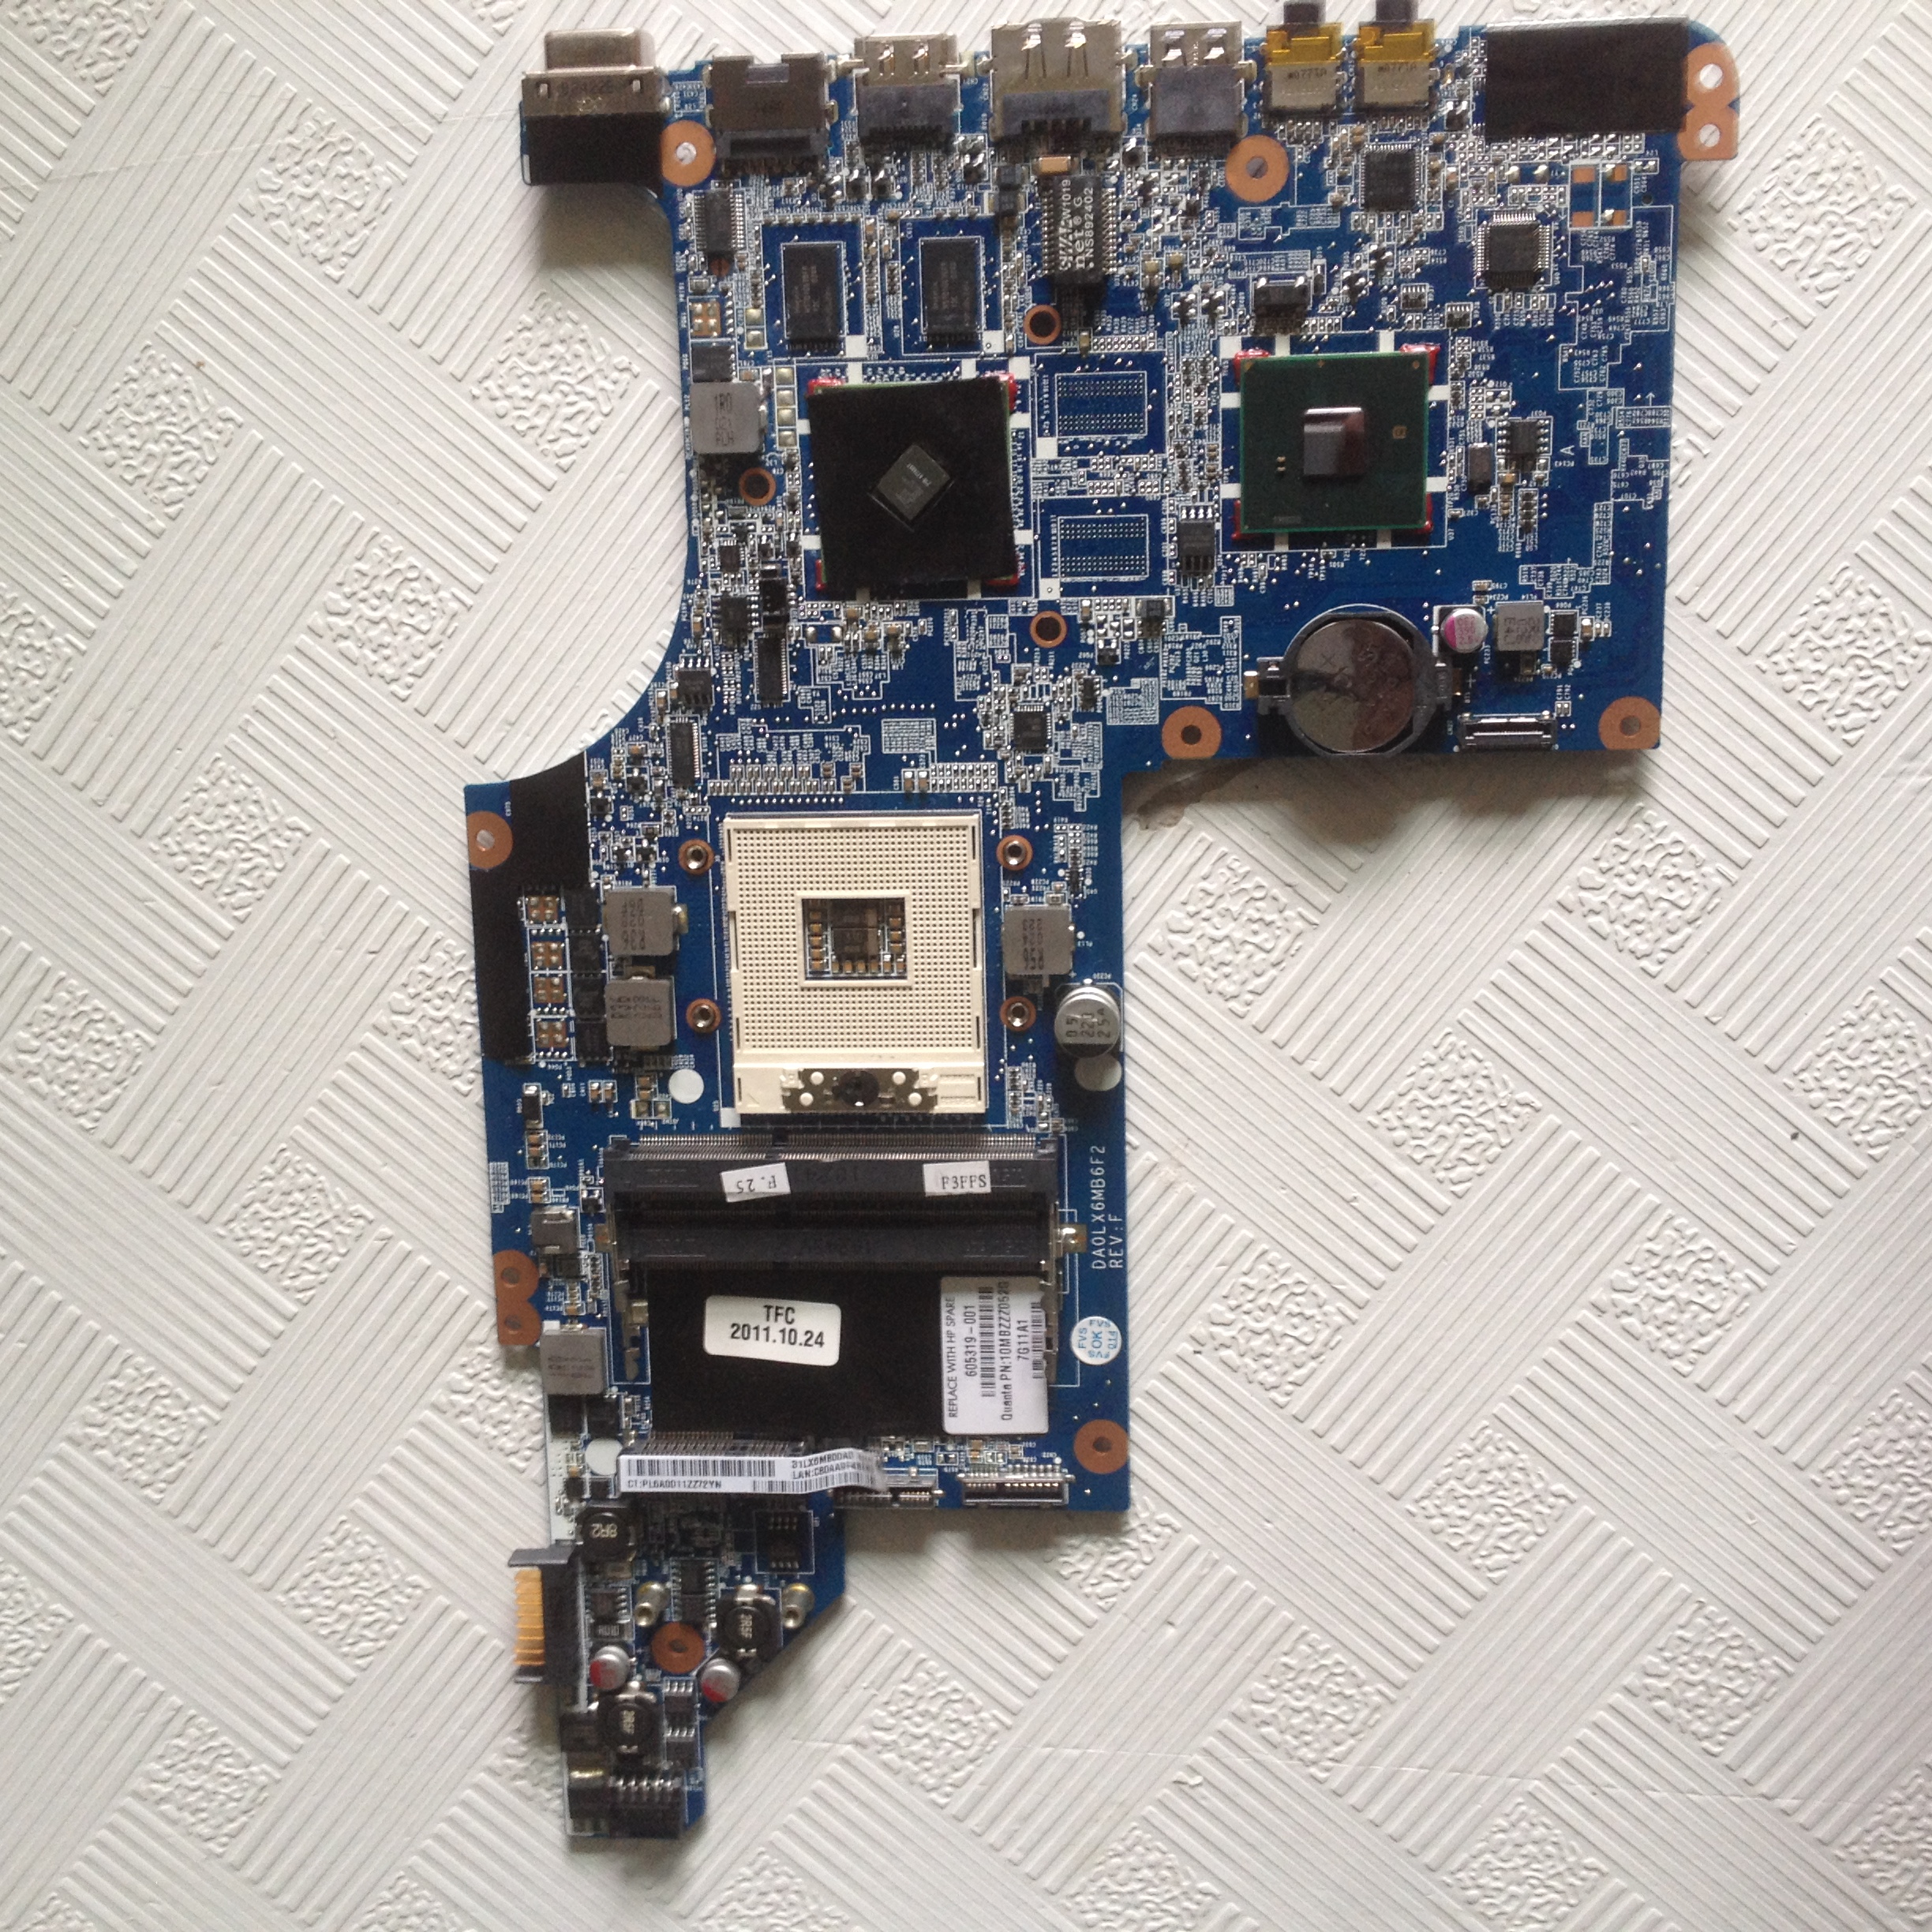 605321-001 motherboard for HP Pavilion DV7 DV7-4000 ATI 5650 1GB